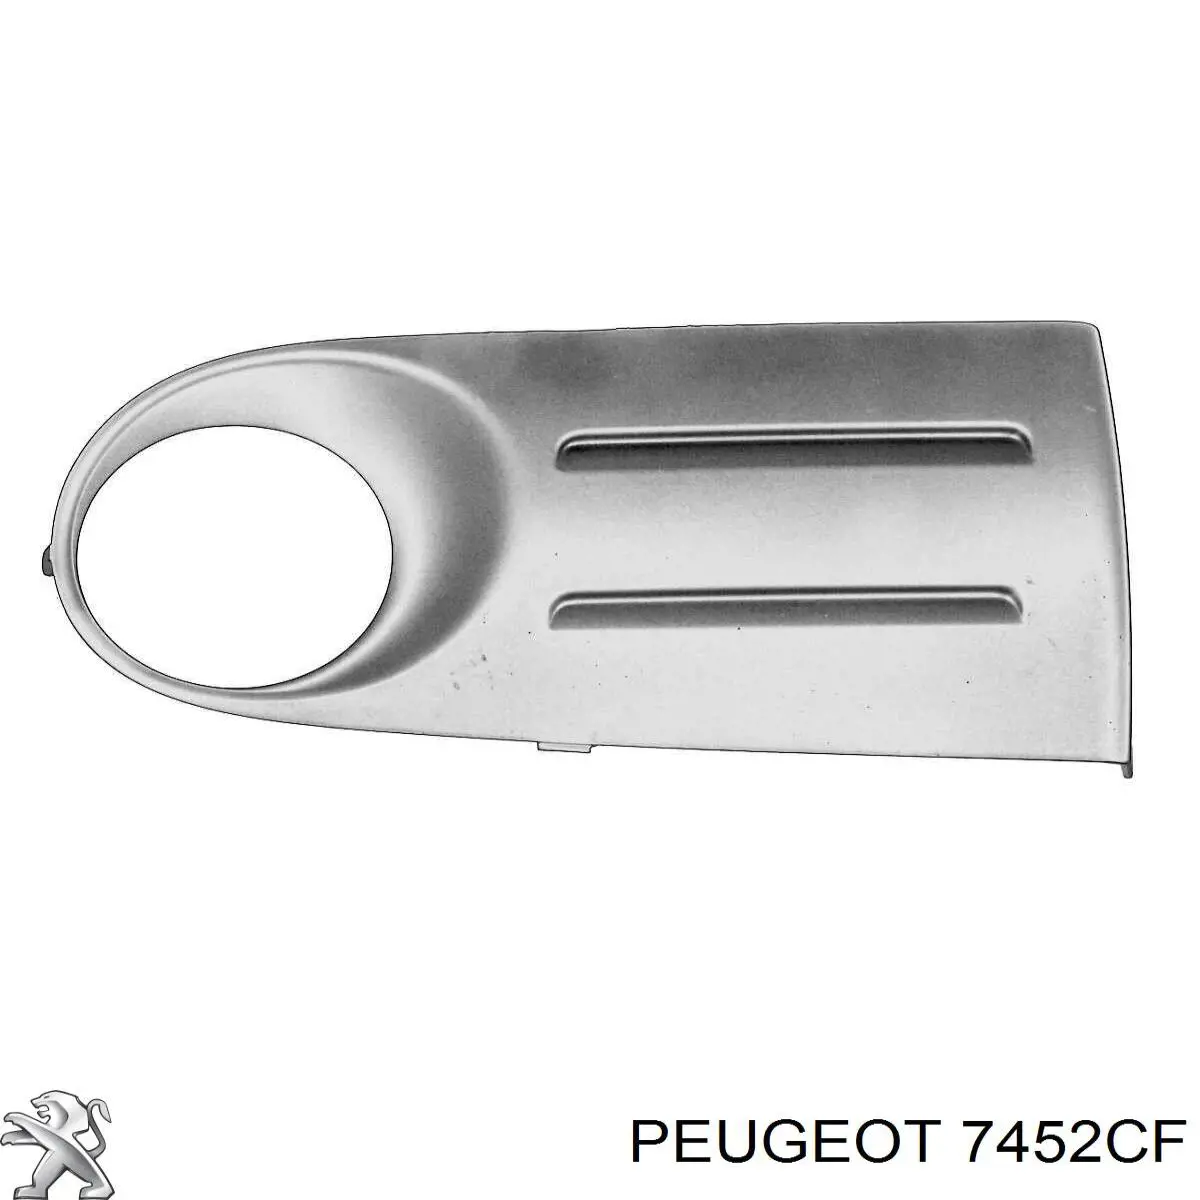 7452CF Peugeot/Citroen rejilla de ventilación, parachoques trasero, derecha